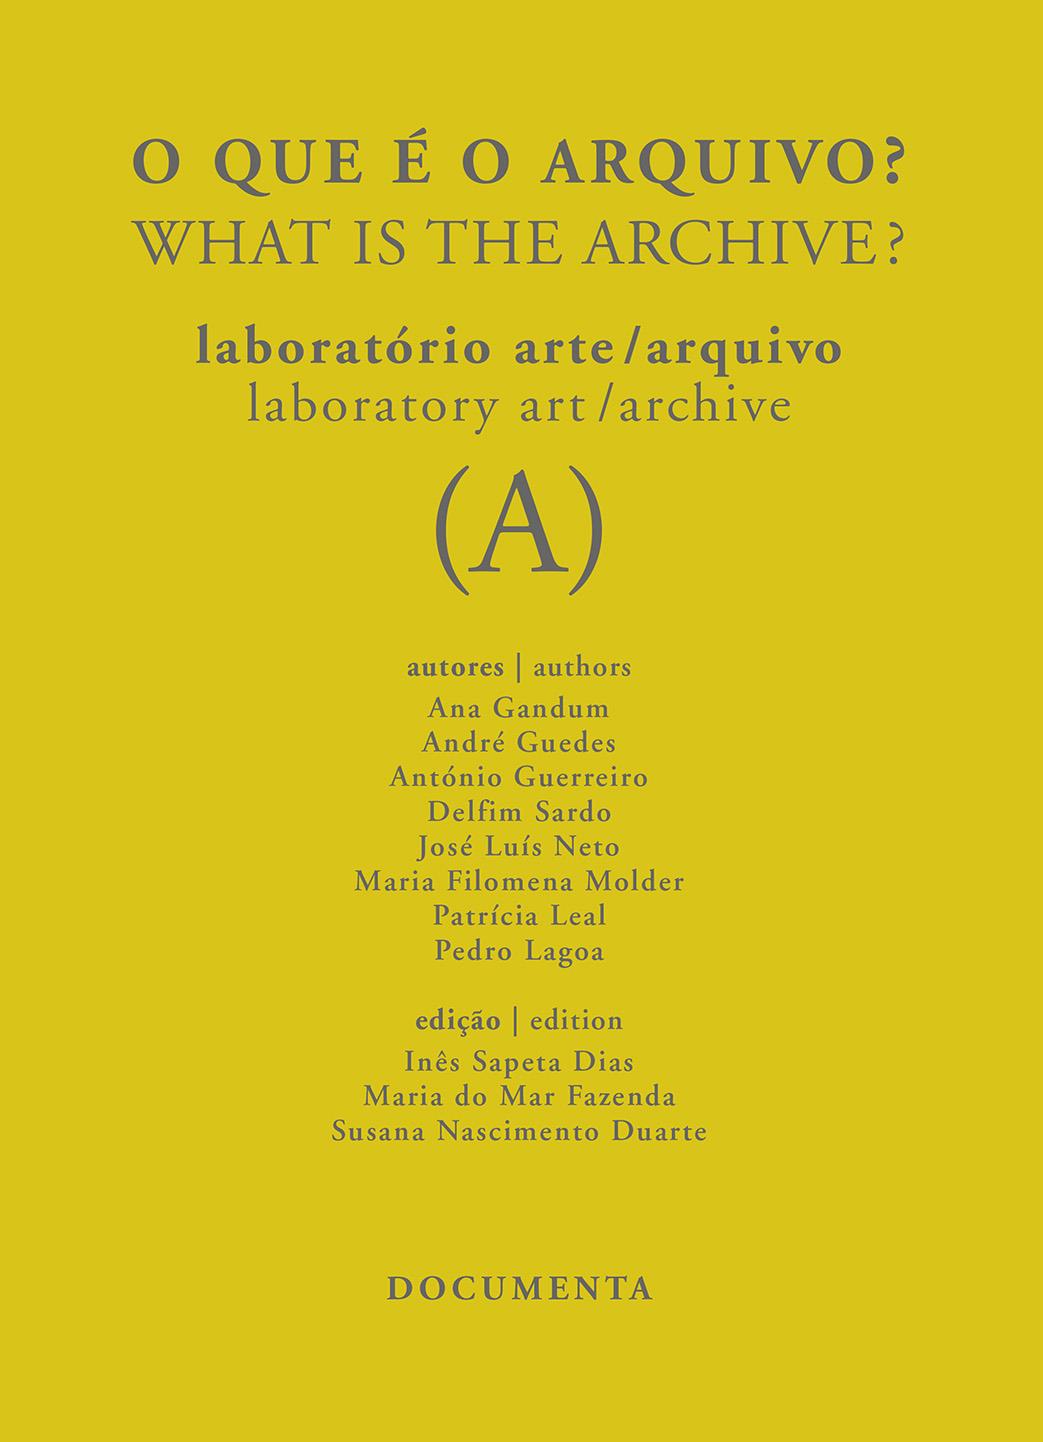 O que é o Arquivo? Laboratório Arte / Arquivo (B) / What is the Archive? Laboratory art / Archive (B)